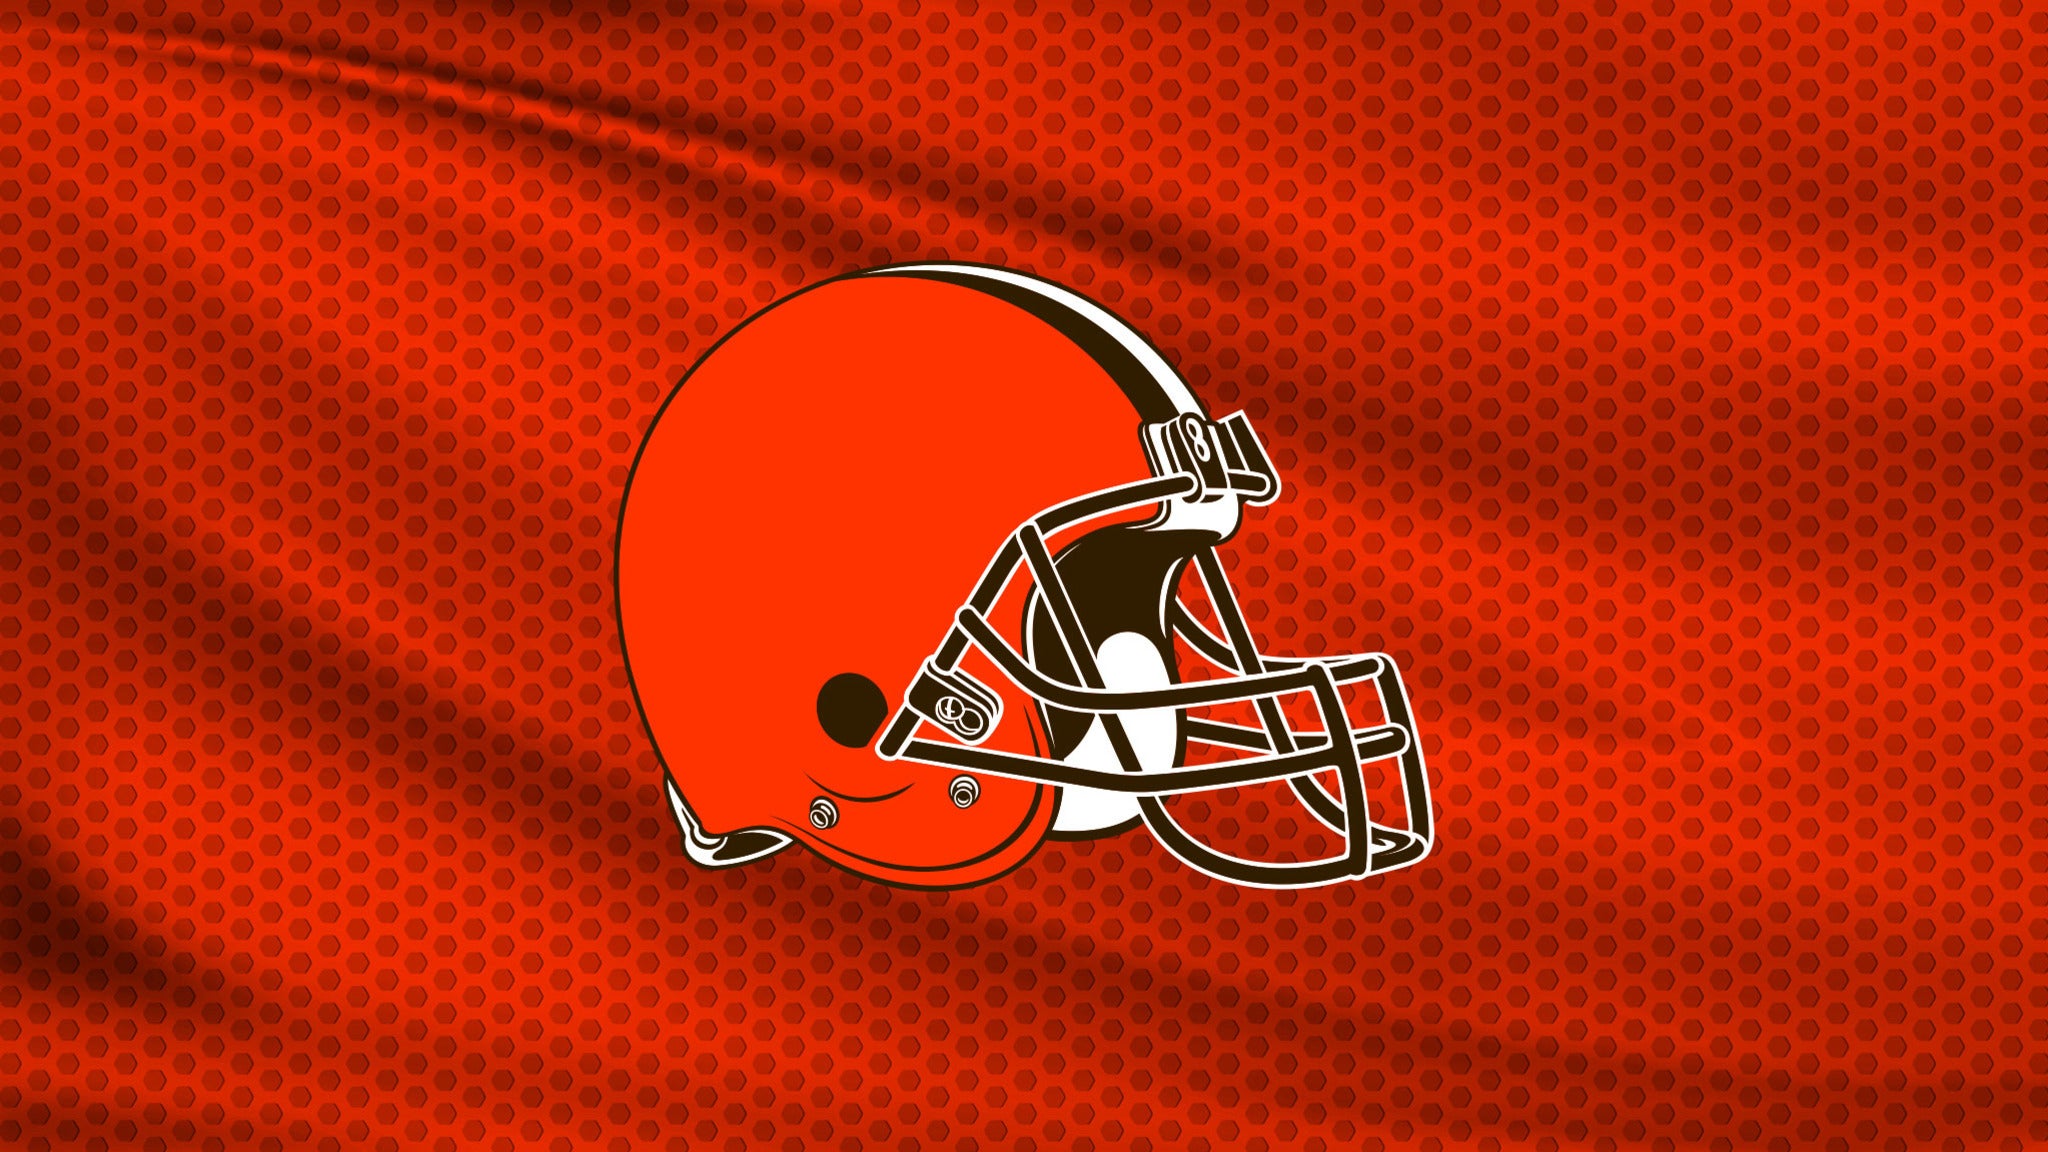 Cleveland Browns  Cleveland browns logo Nfl football wallpaper Cleveland  browns football